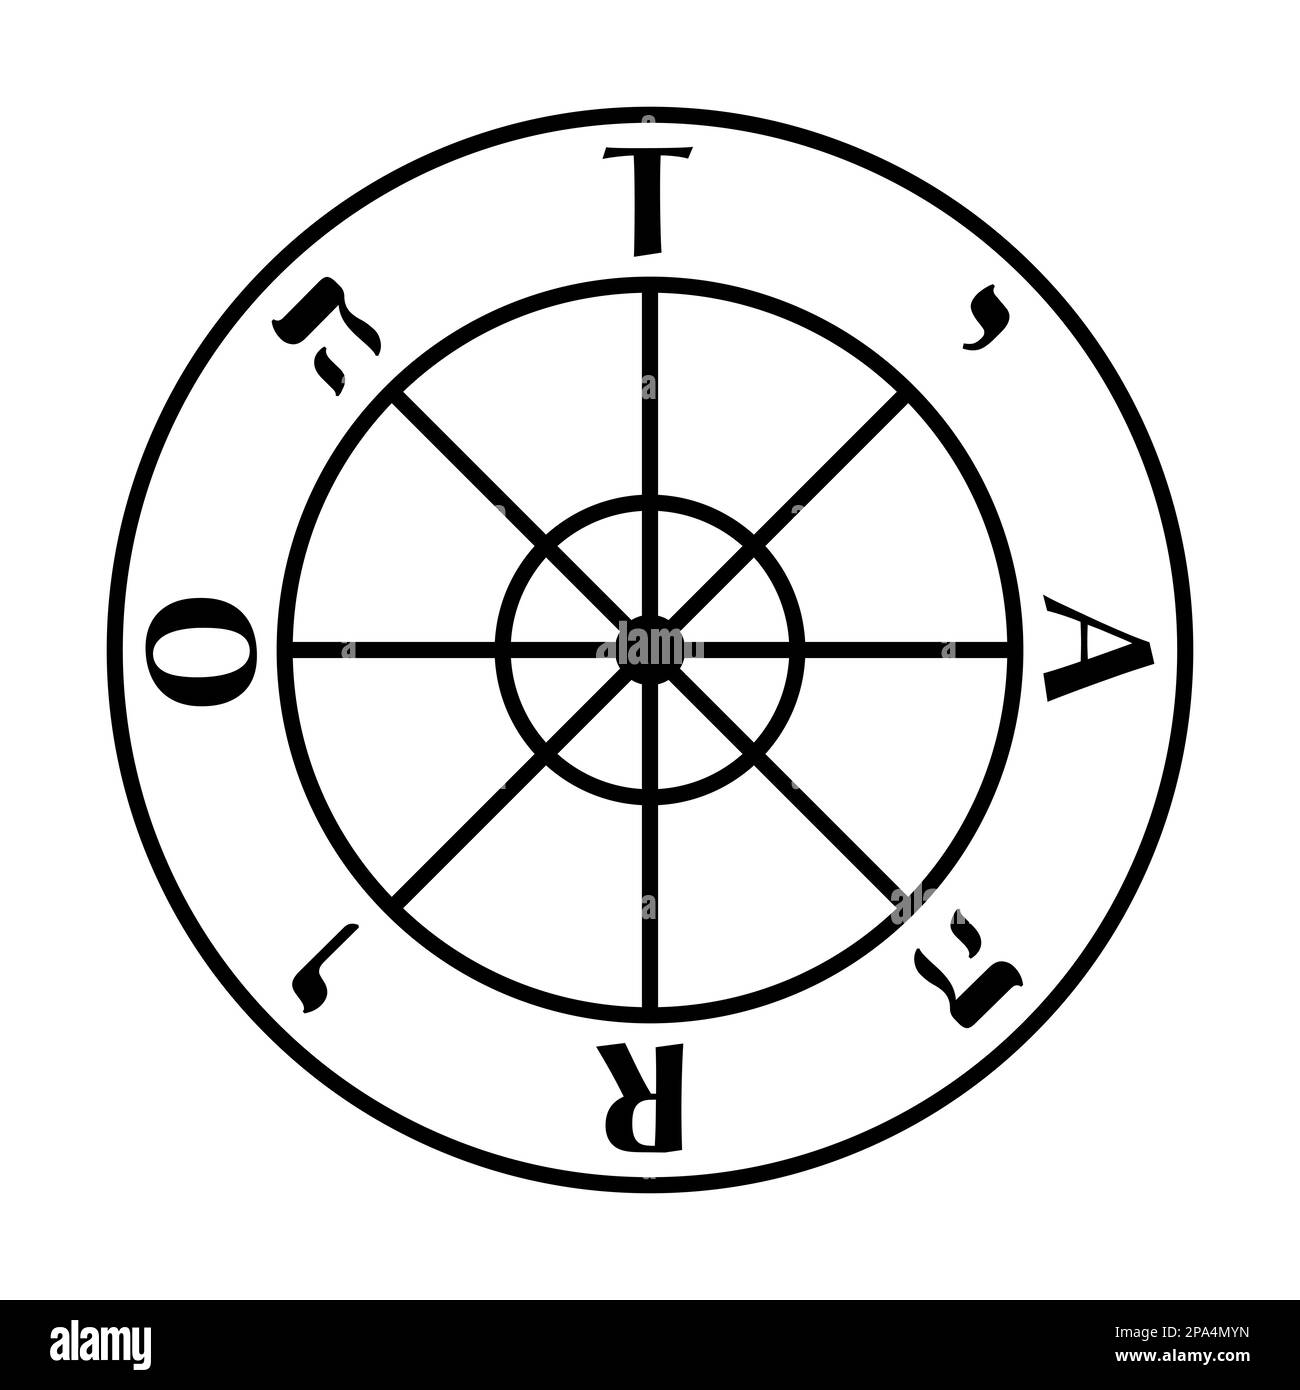 Glücksrad, Symbol der Tarotkarte und Arcanum Nummer X. Wagenrad mit 8 Speichen, im Uhrzeigersinn die Großbuchstaben TARO und Tetragramm. Stockfoto